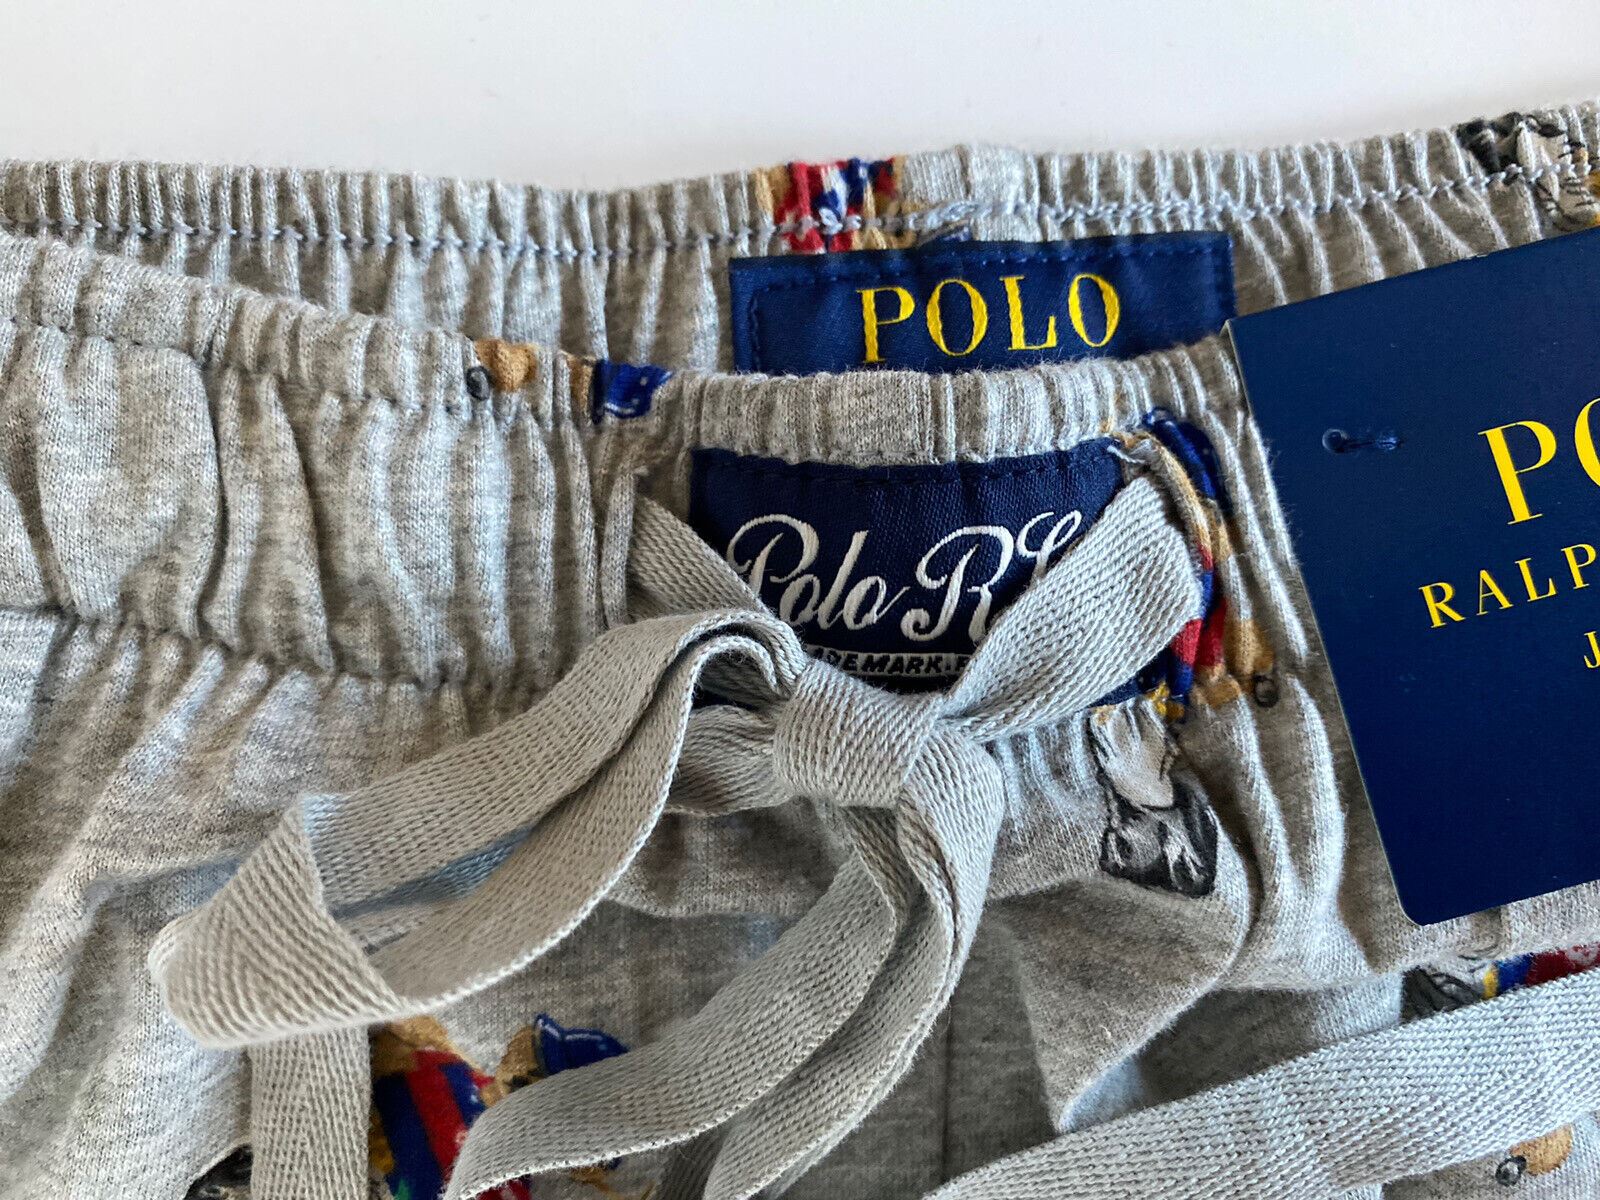 Neu mit Etikett: Polo Ralph Lauren Herren-Pyjamahose mit Bärenmuster, Grau, Baumwolle, Größe S